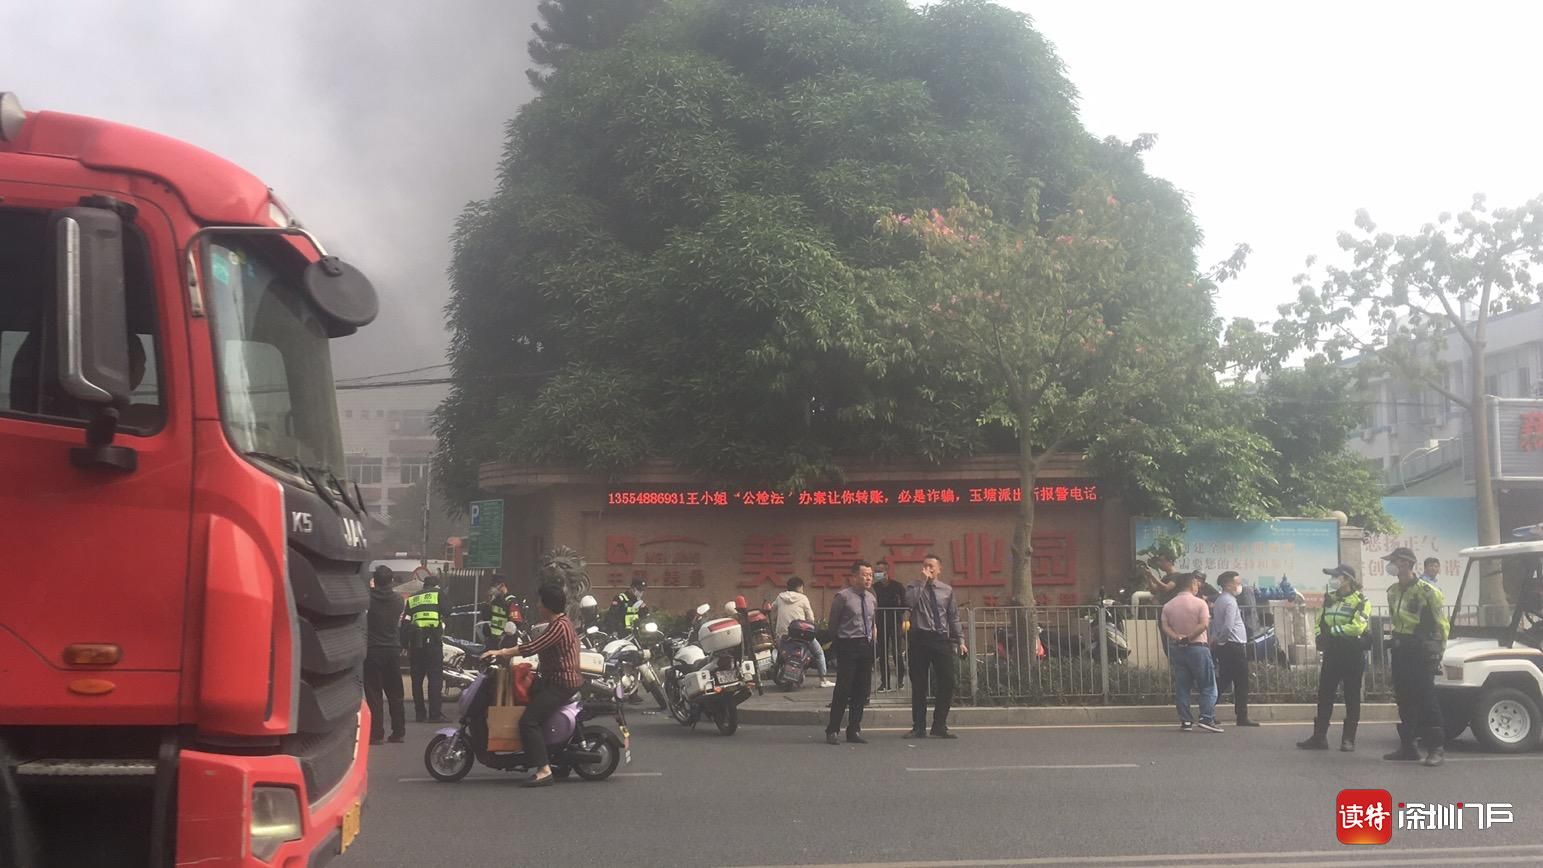 国务院成立河南安阳市凯信达商贸有限公司“11•21”特别重大火灾事故调查组